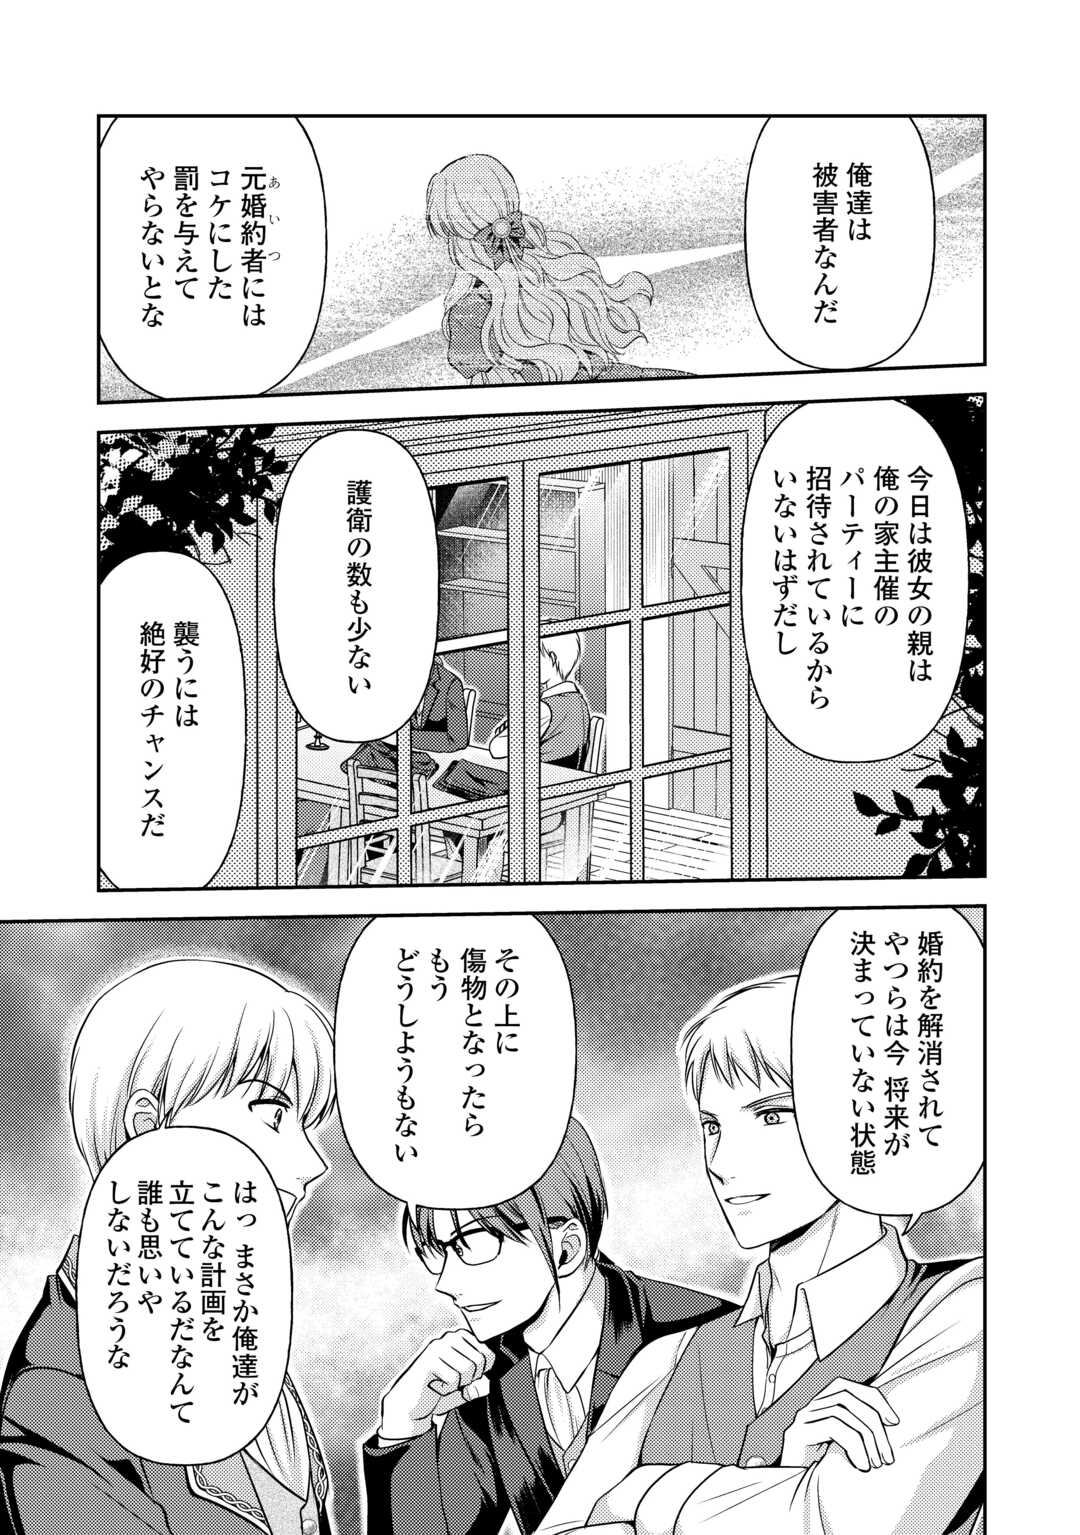 Kawaii Gimai ga Konyakuhaki Saretarashii no de, Ima kara Orei ni Mairimasu. - Chapter 12.2 - Page 4